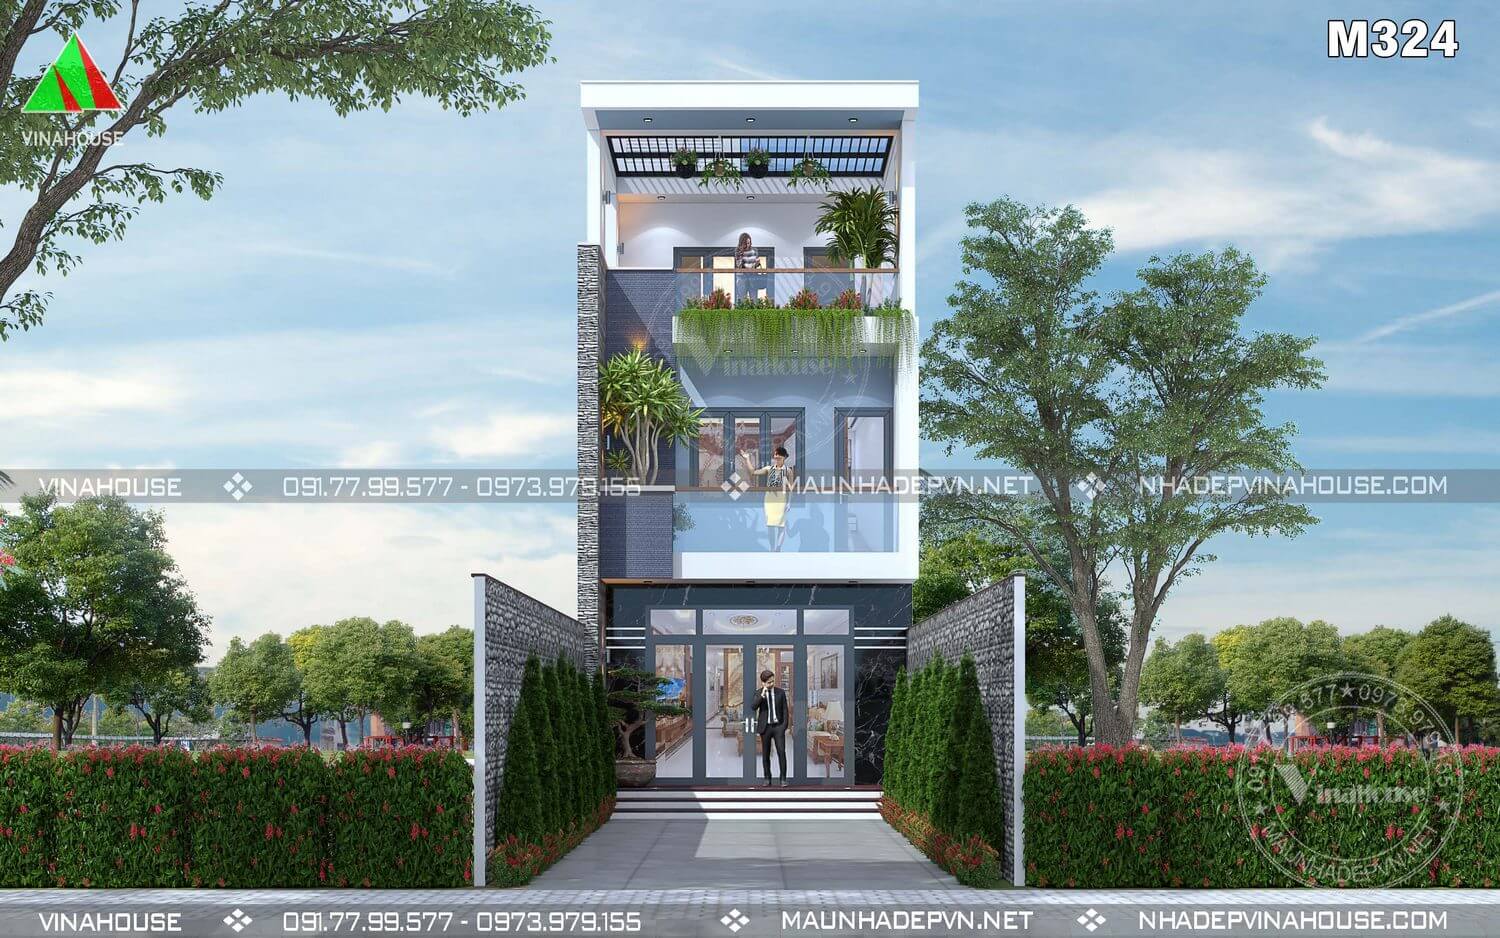 Thiết kế nhà phố 3 tầng hiện đại đẹp ở Bình Dương M324